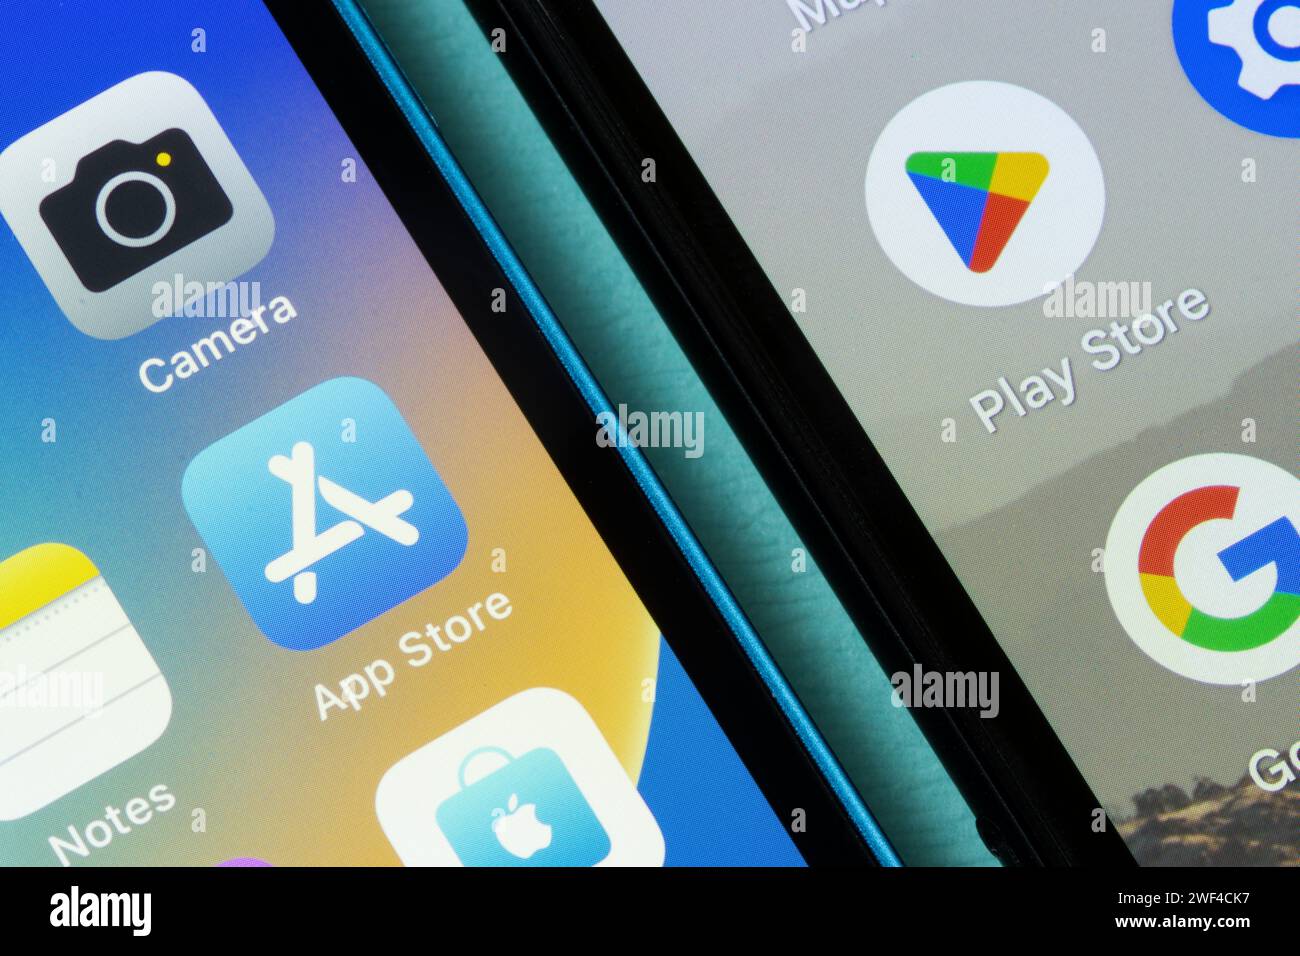 Le icone di Apple App Store e Google Play Store sono visualizzate rispettivamente su un iPhone e uno smartphone Google Pixel. Apple App Store e Google Play Store. Foto Stock